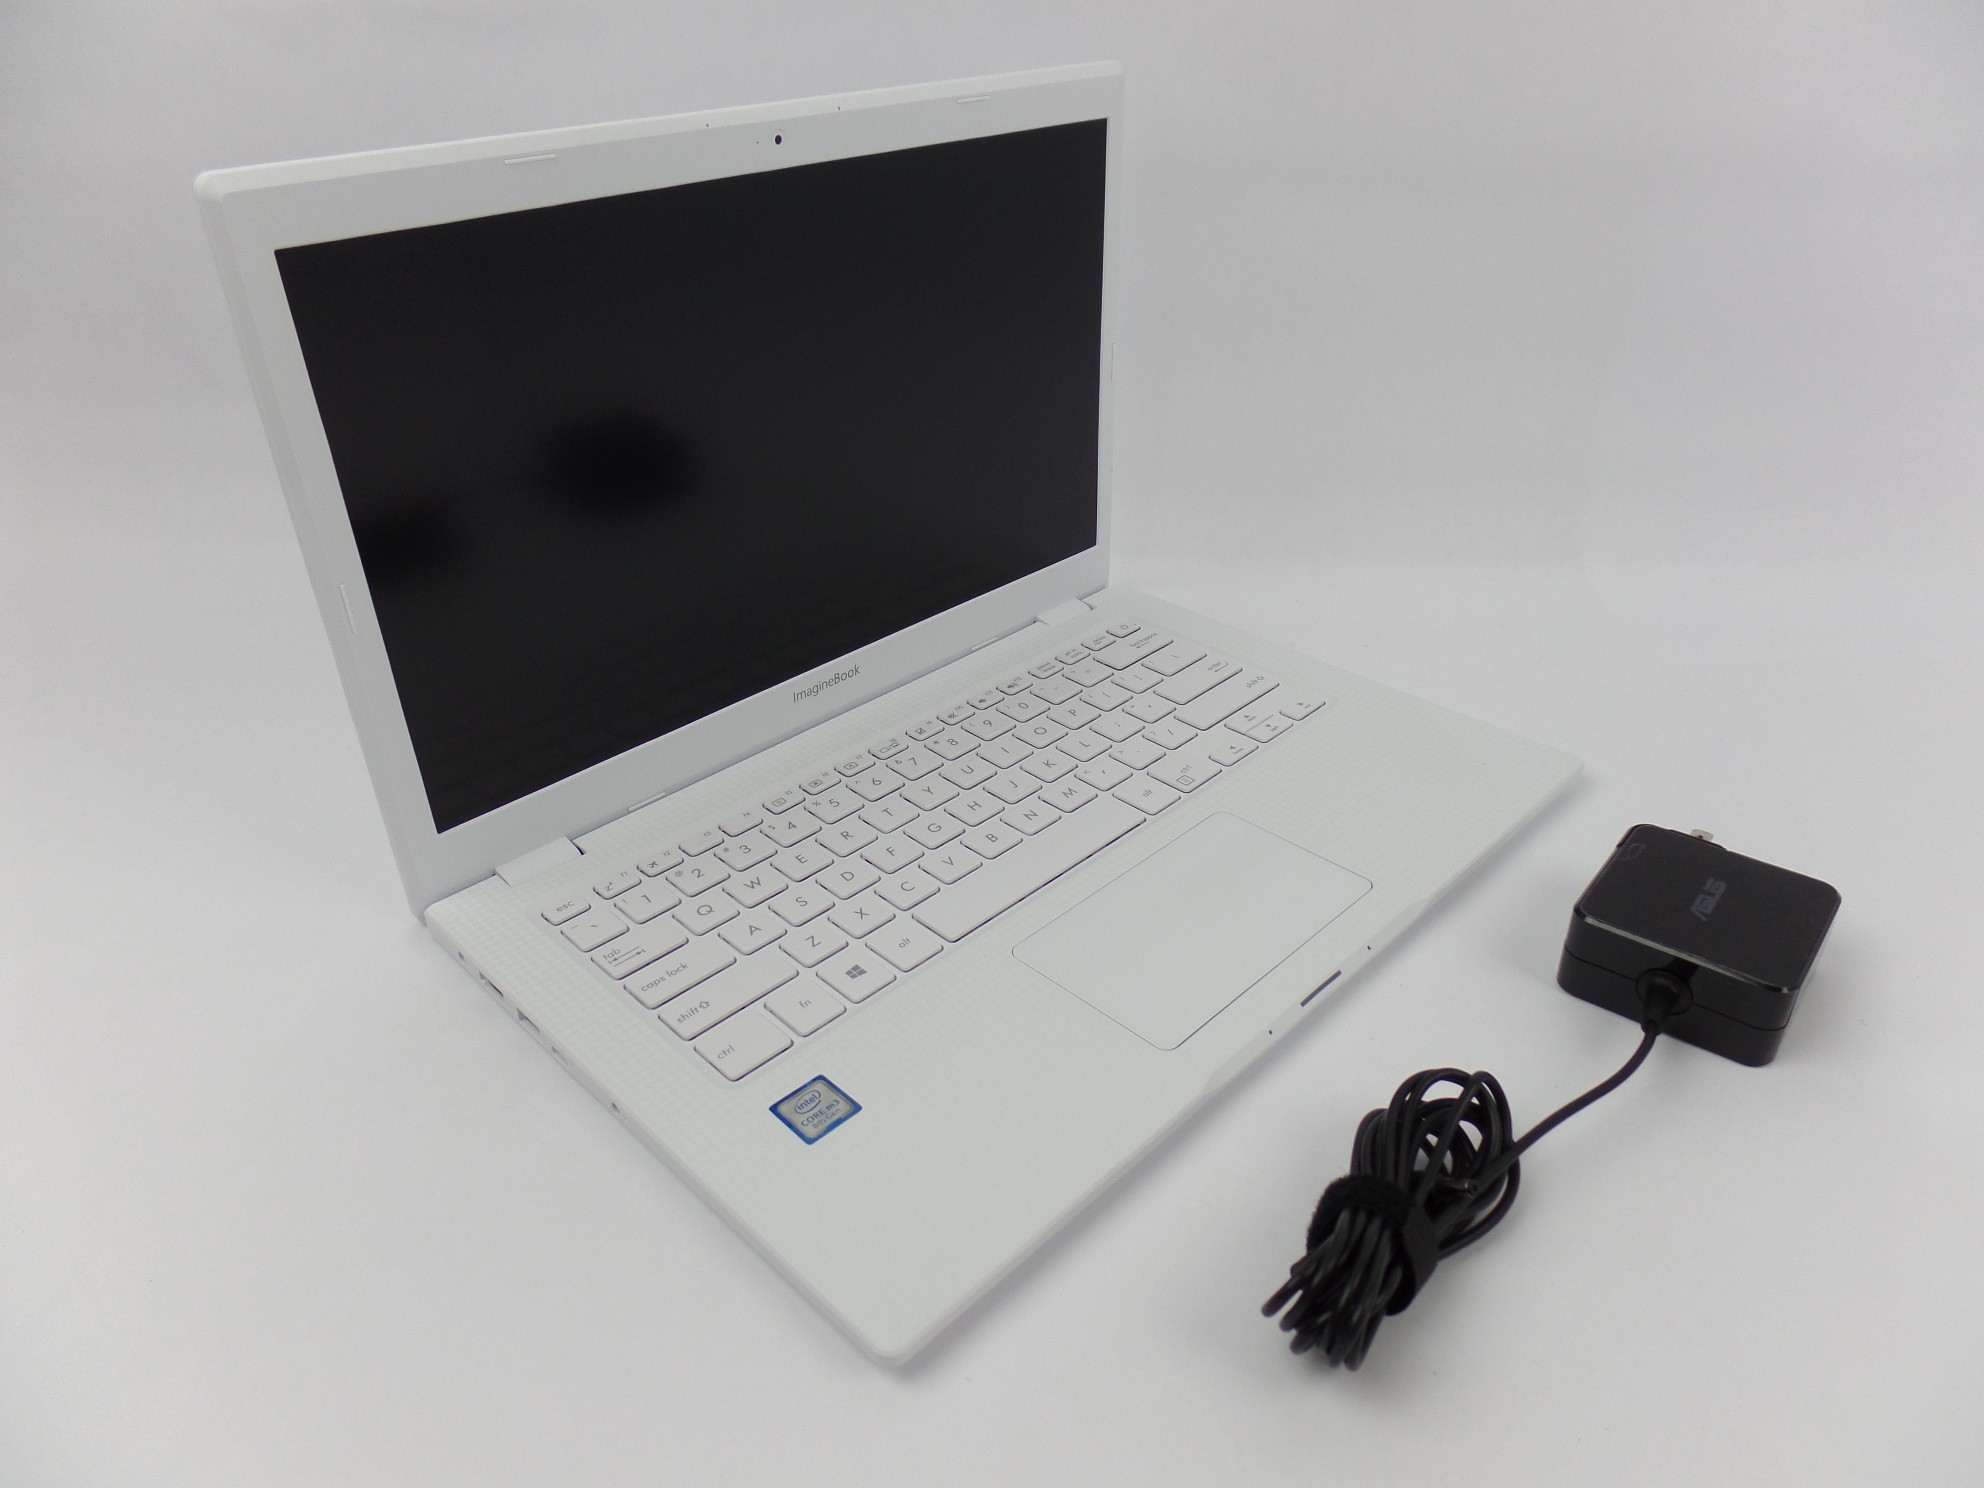 ASUS MJ401TA-BM3N5 14" FHD m3-8100Y 1.1GHz 4GB 128GB SSD W10H Laptop S